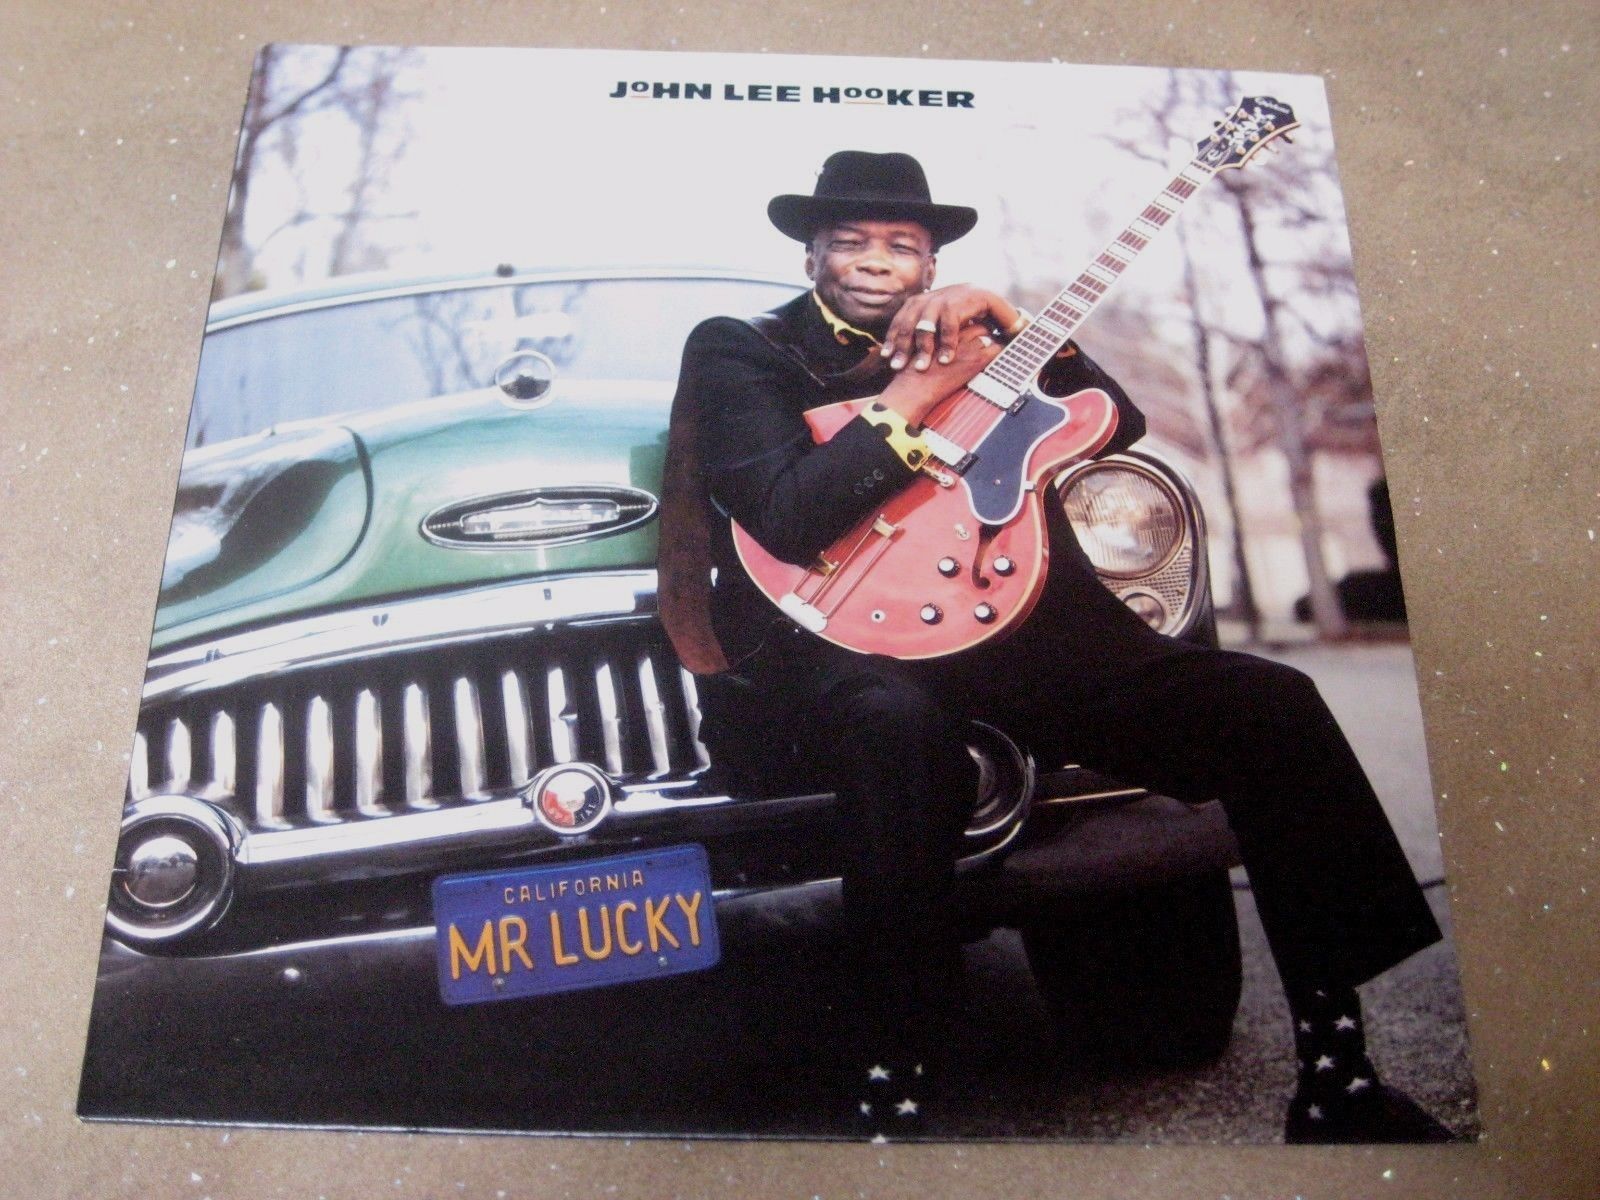 JOHN LEE HOOKER   MR LUCKY   SILVERTONE ORE LP 519   1991   EX+/EX+